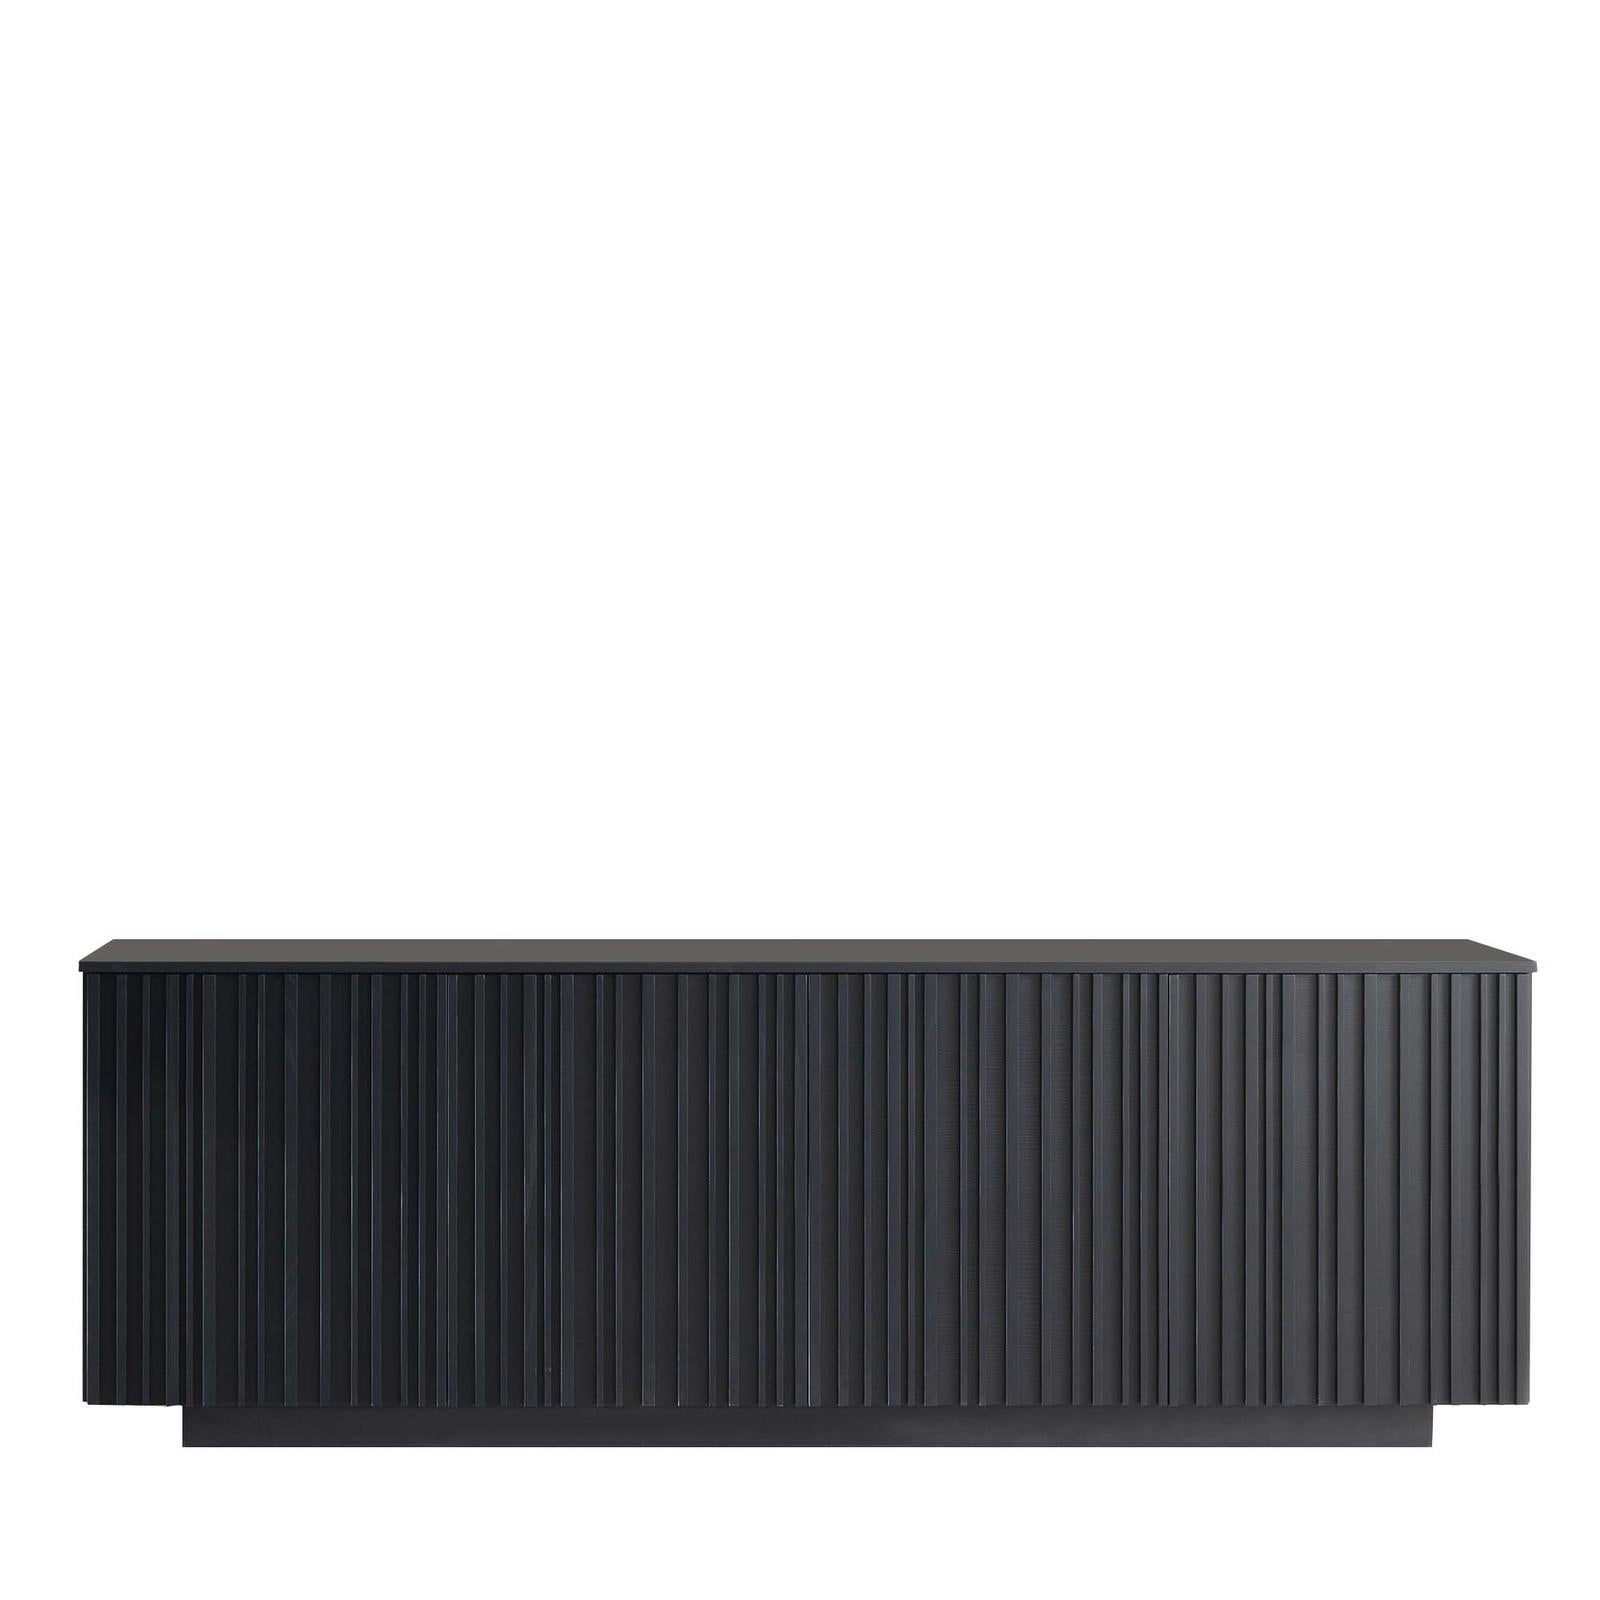 Reposant sur une base en bois plus petite, cet exquis buffet rectangulaire noir de Giuliano Cappelletti se concentre sur les éléments géométriques de la ligne, dont la répétition verticale presque hypnotique sur les portes avant du buffet confère